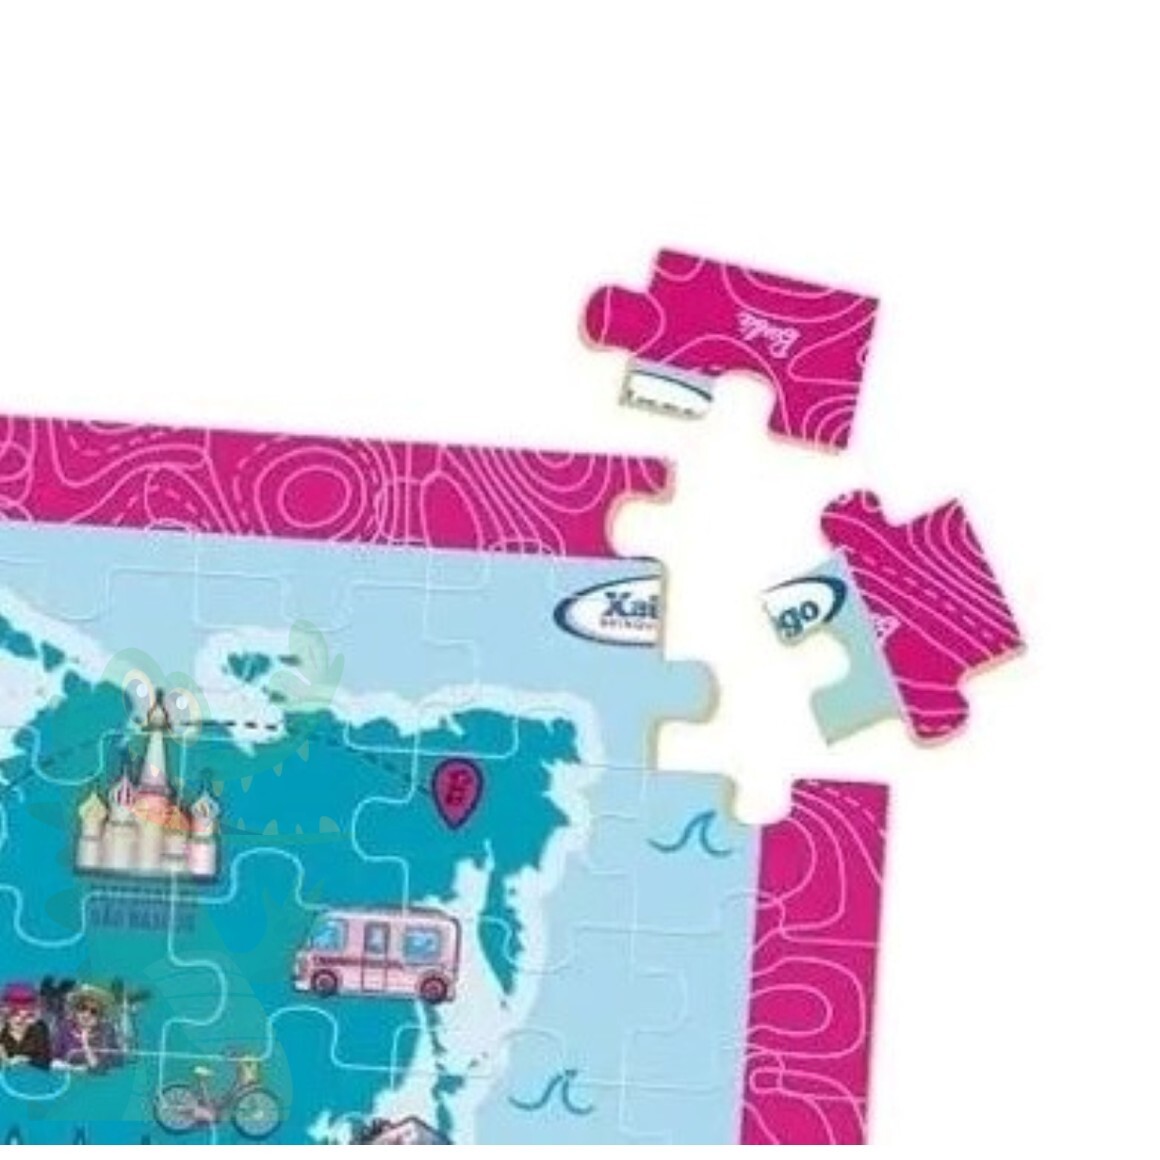 Quebra-Cabeça - 100 Peças - Madeira - Barbie - Mapa Mundi Travel - Xalingo